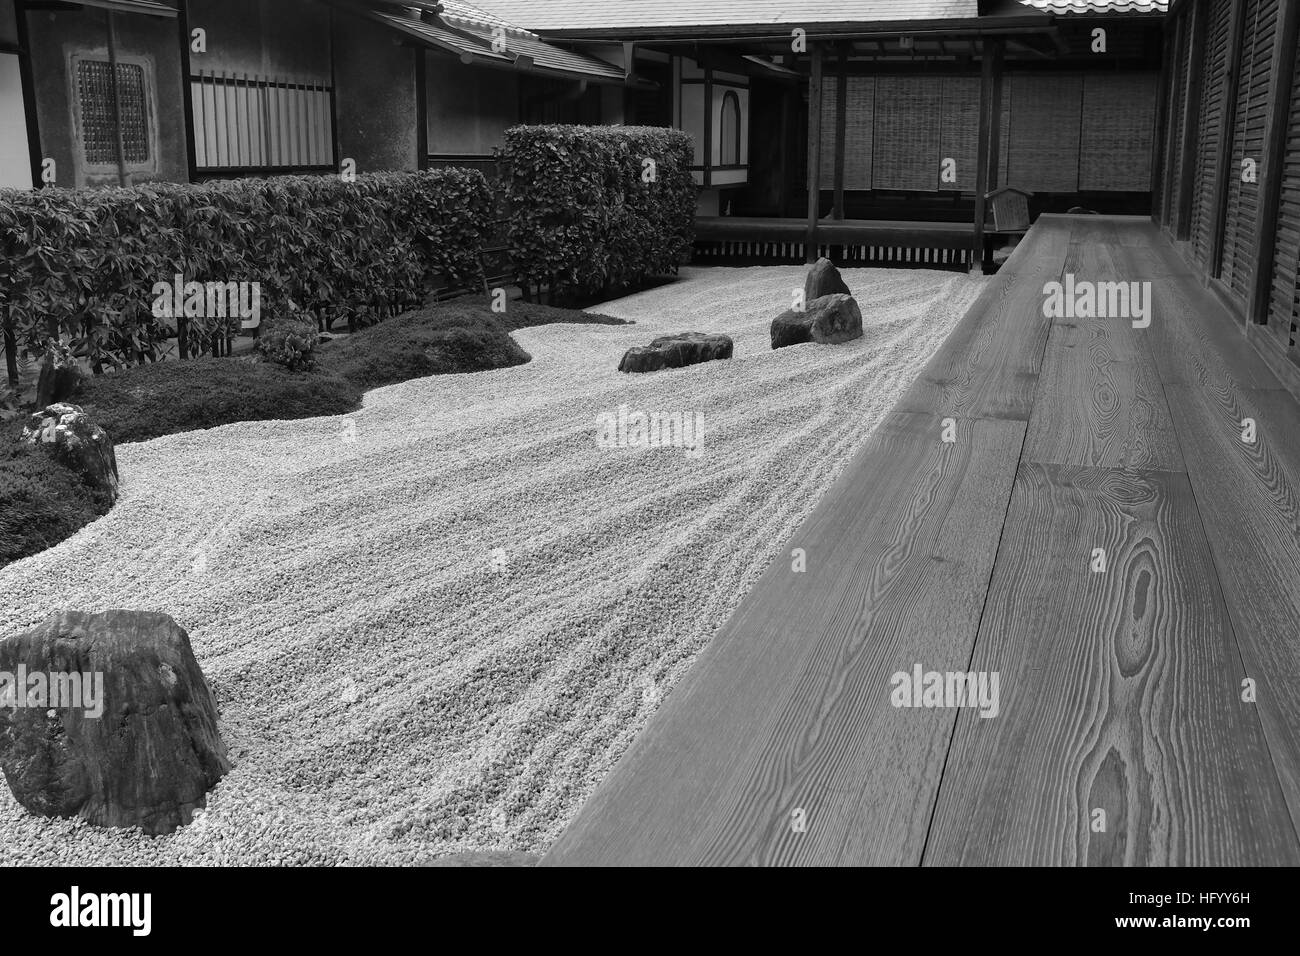 Giardino zen in un ambiente tipicamente giapponese a Kyoto, Giappone. Un giardino paesaggistico asciutto appositamente creato che evoca serenità, pace, calma. Foto Stock